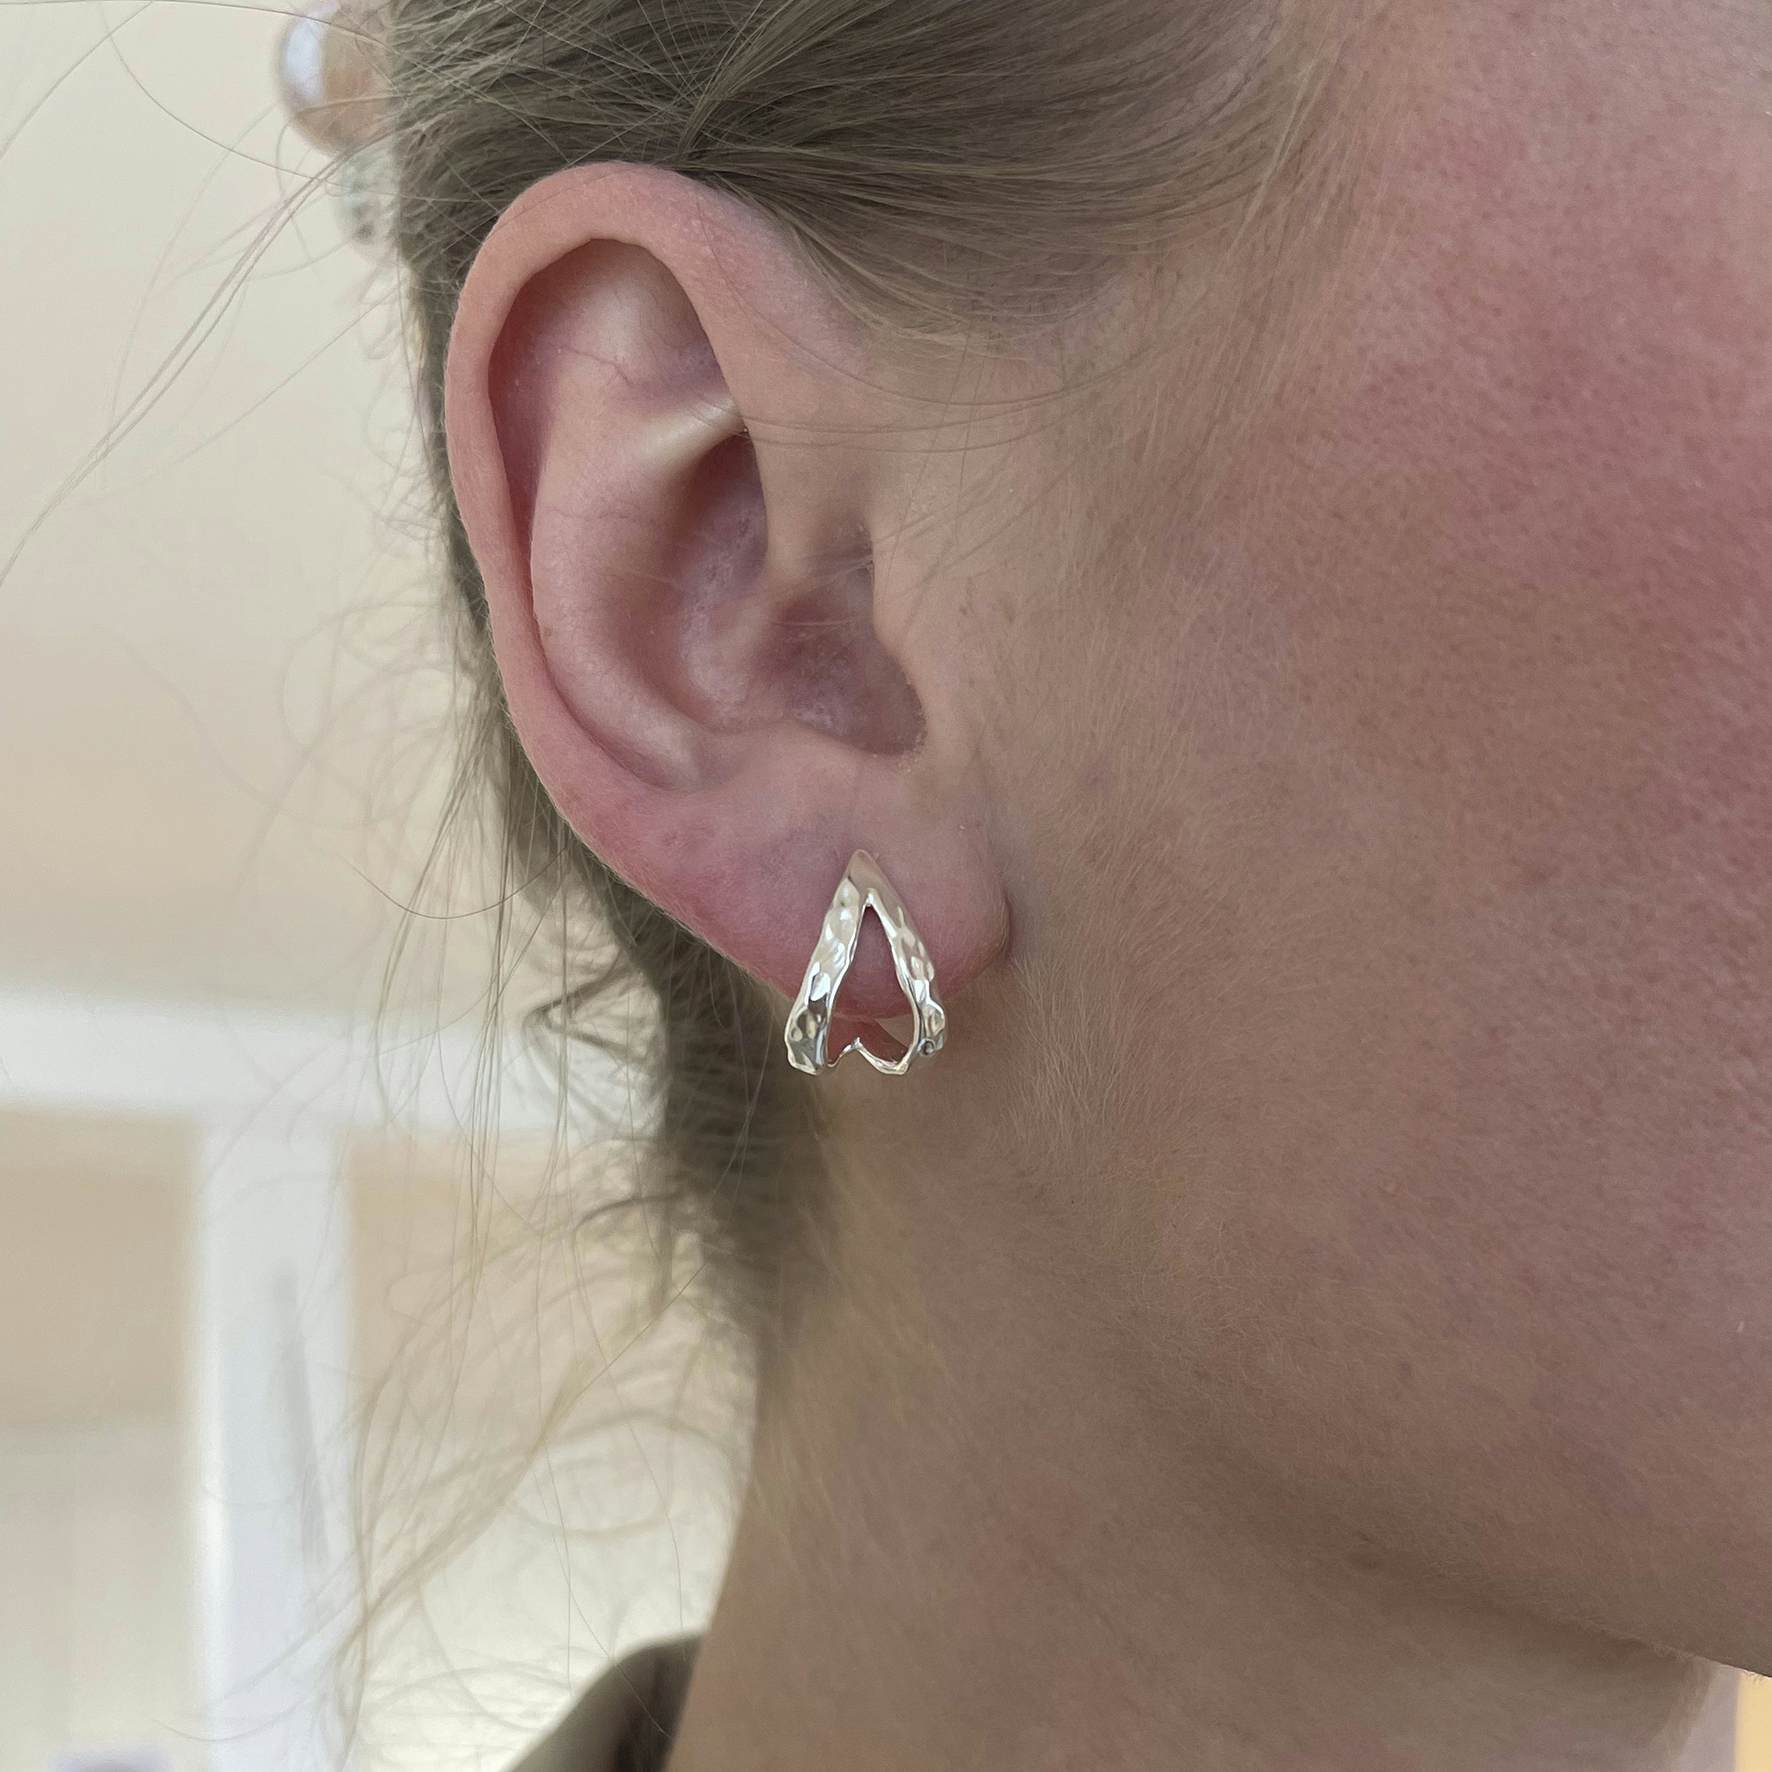 Breakup Earring from Jane Kønig in Silver Sterling 925